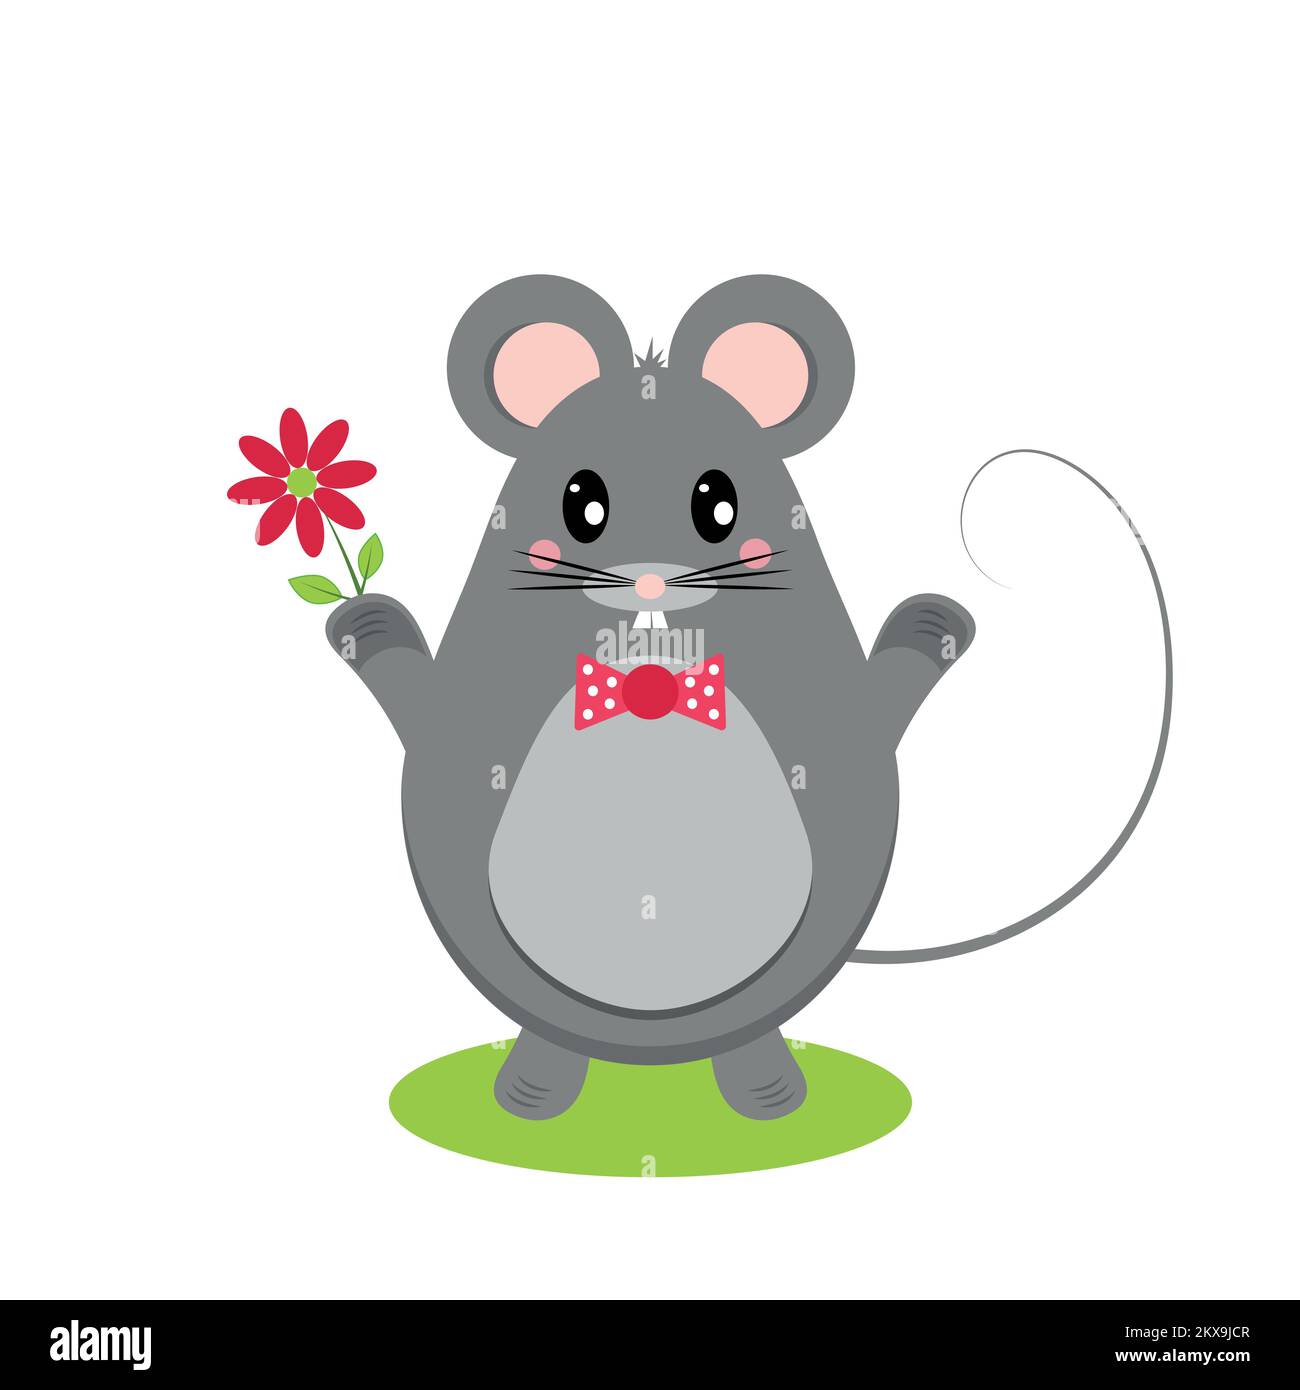 Souris ou rat gris en forme d'oeuf, avec une fleur de camomille, sur une pelouse verte. Illustration vectorielle dans un style plat. Illustration de Vecteur